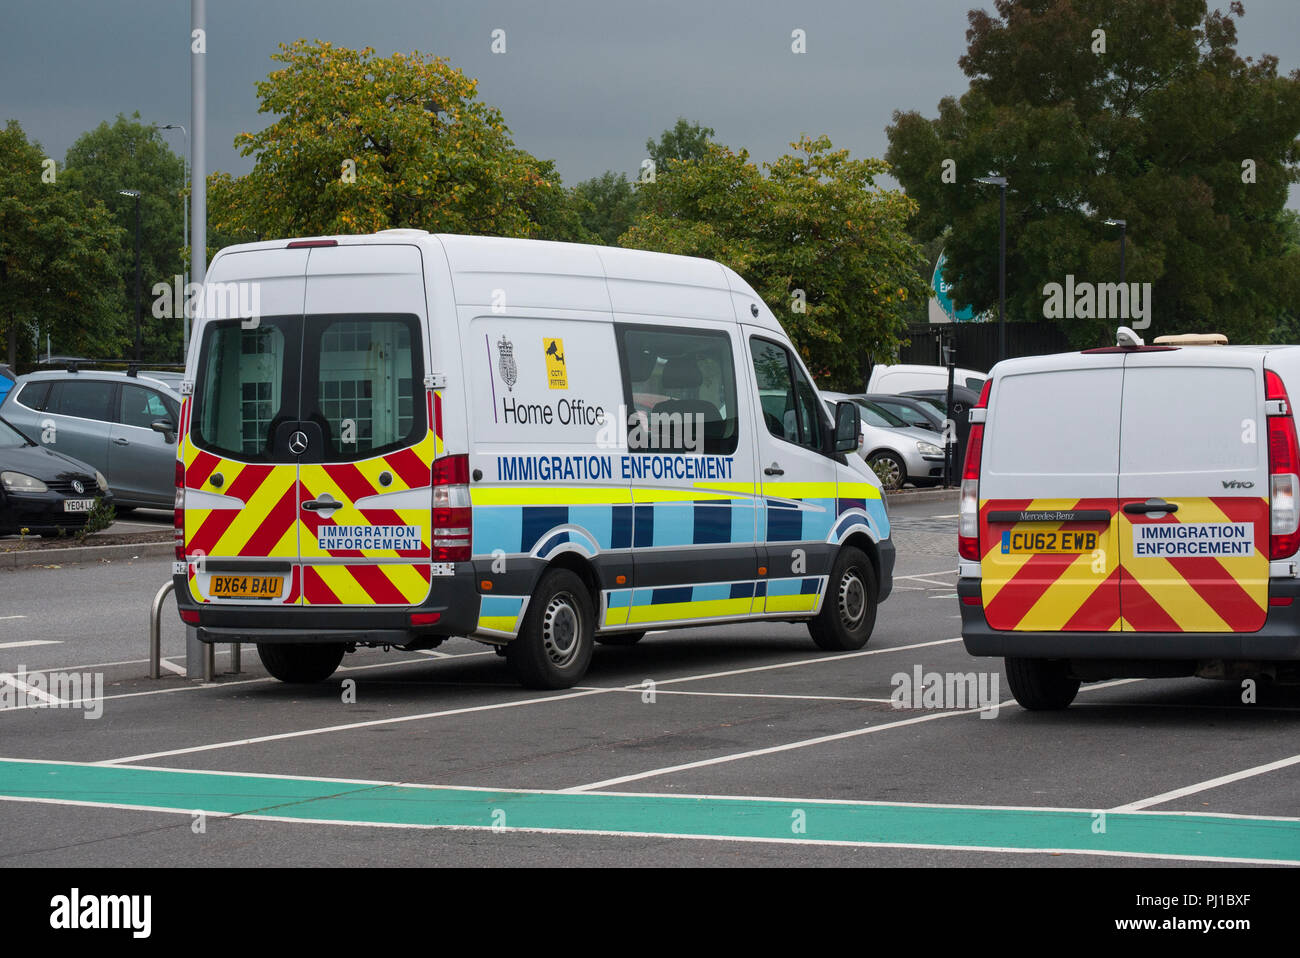 Einwanderung Durchsetzung Fahrzeuge auf einem Parkplatz geparkt, Greater Manchester, England, UK. Stockfoto